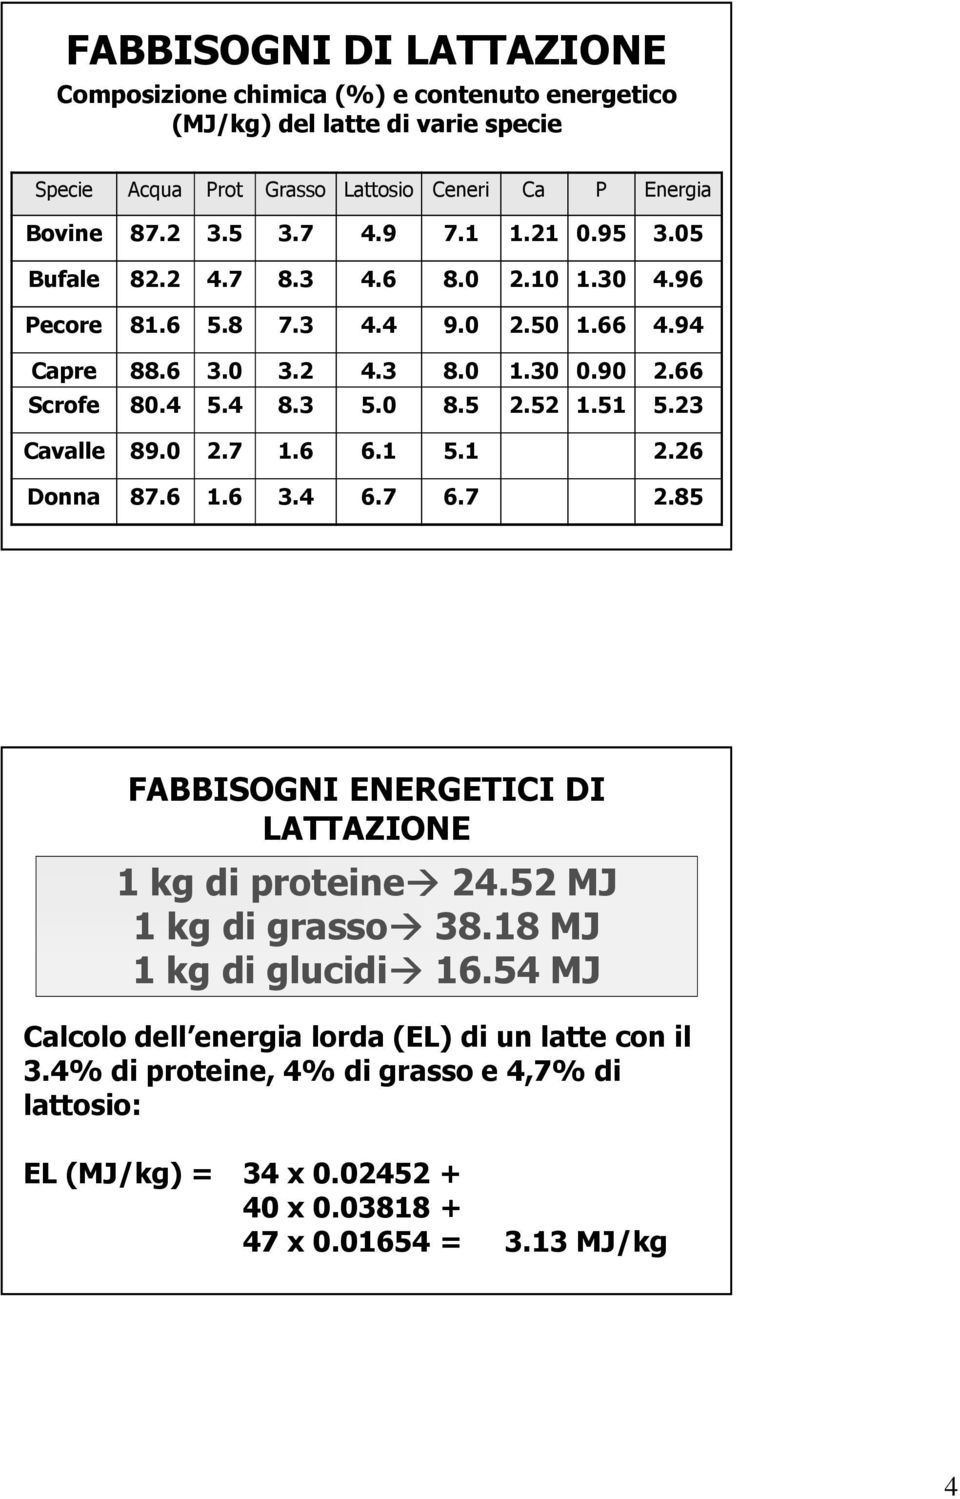 5 2.52 1.51 5.23 Cavalle 89.0 2.7 1.6 6.1 5.1 2.26 Donna 87.6 1.6 3.4 6.7 6.7 2.85 FABBISOGNI ENERGETICI DI LATTAZIONE 1 kg di proteine 24.52 MJ 1 kg di grasso 38.